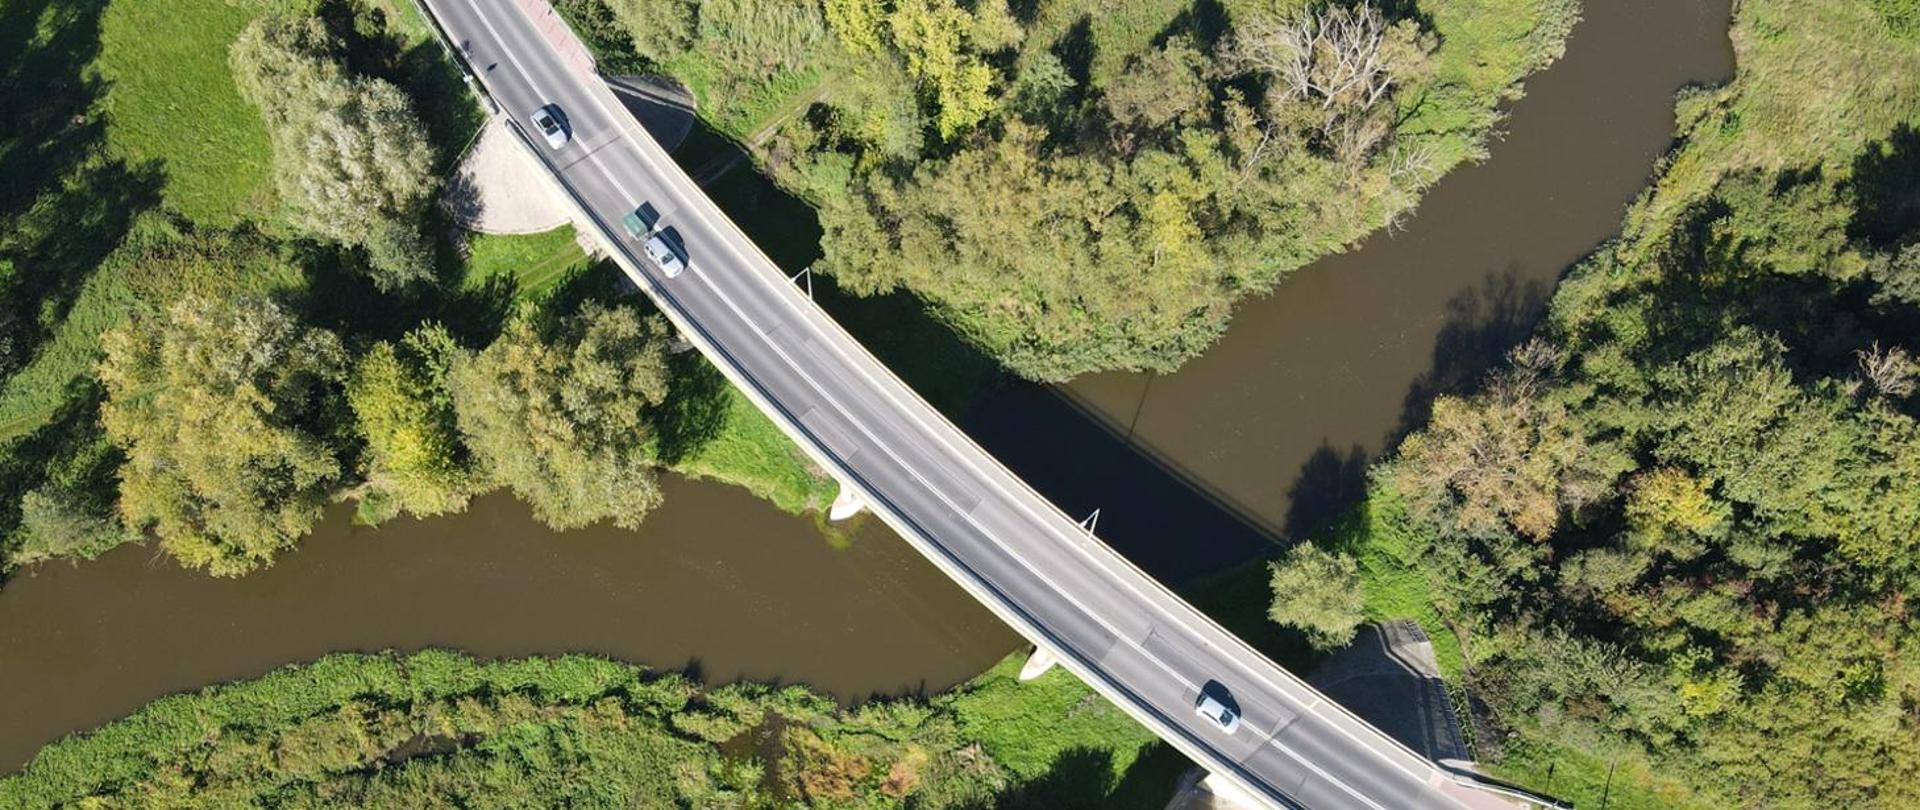 Widok z lotu ptaka na most biegnący nad rzeką. Na moście widoczne pojazdy, na brzegach rzeki bujna roślinność.